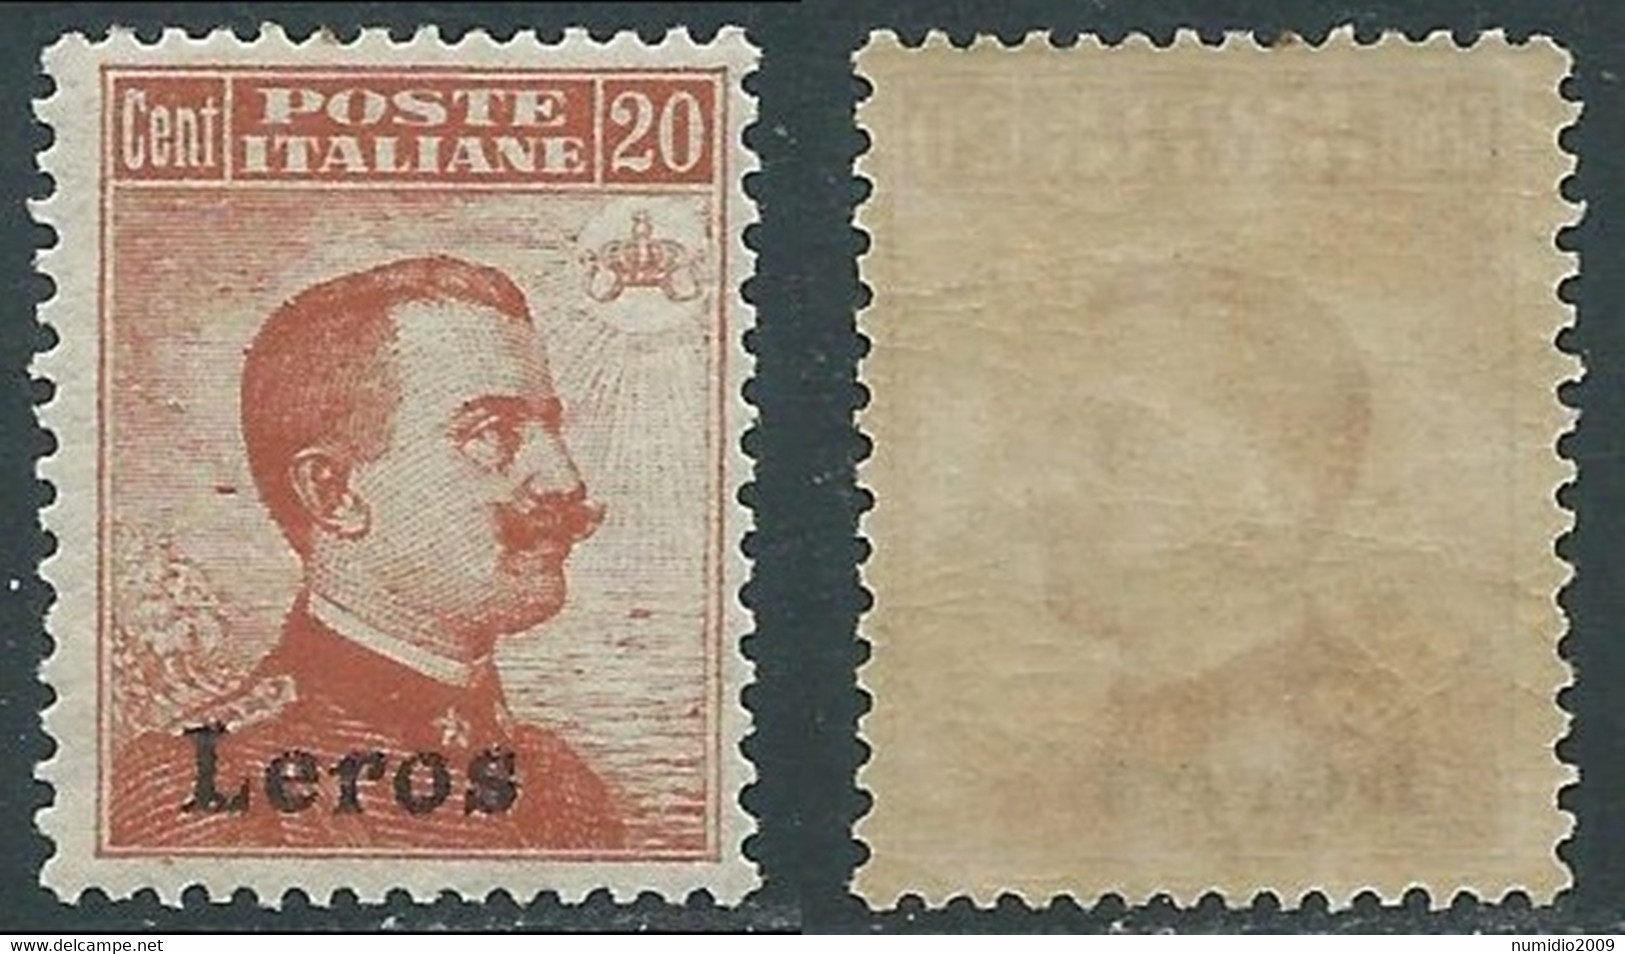 1917 EGEO LERO EFFIGIE 20 CENT MNH ** - E203 - Aegean (Lero)